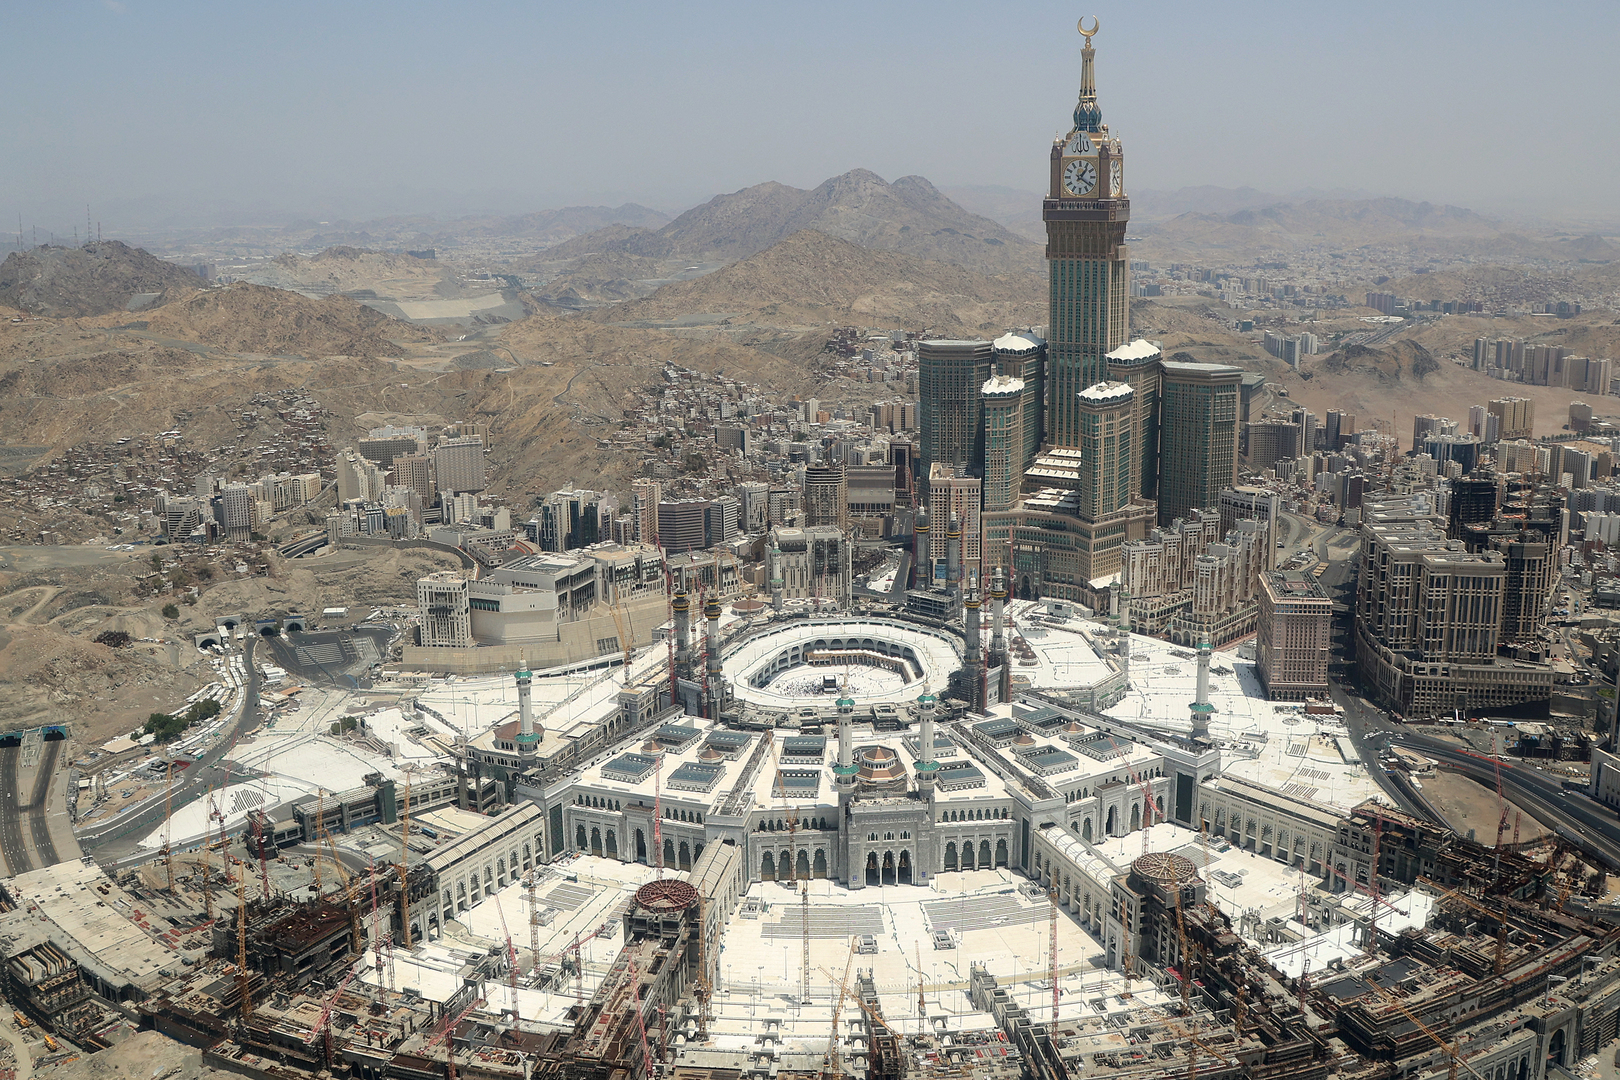 السلطات السعودية تصدر بيانا بشأن أنباء متداولة عن أراض داخل حد الحرم بمكة المكرمة